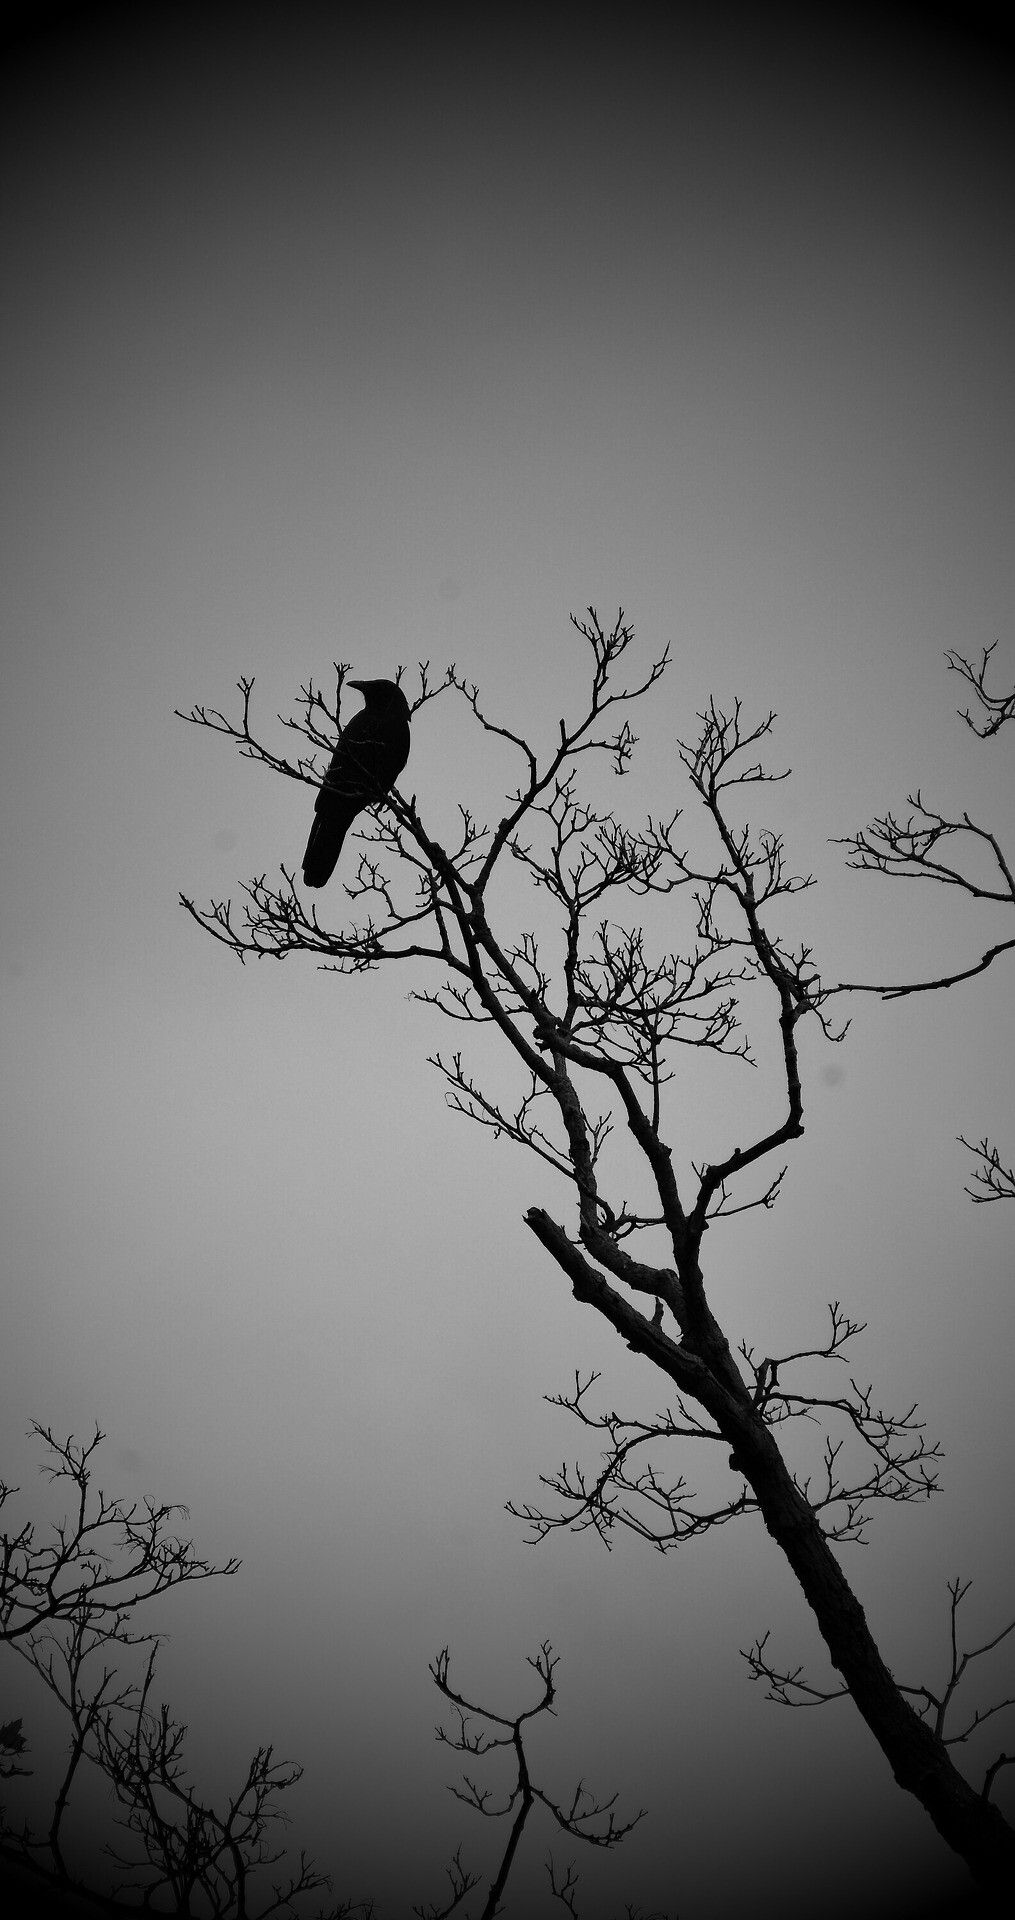 cuervo fondo de pantalla para iphone,árbol,ramita,cielo,pájaro,en blanco y negro